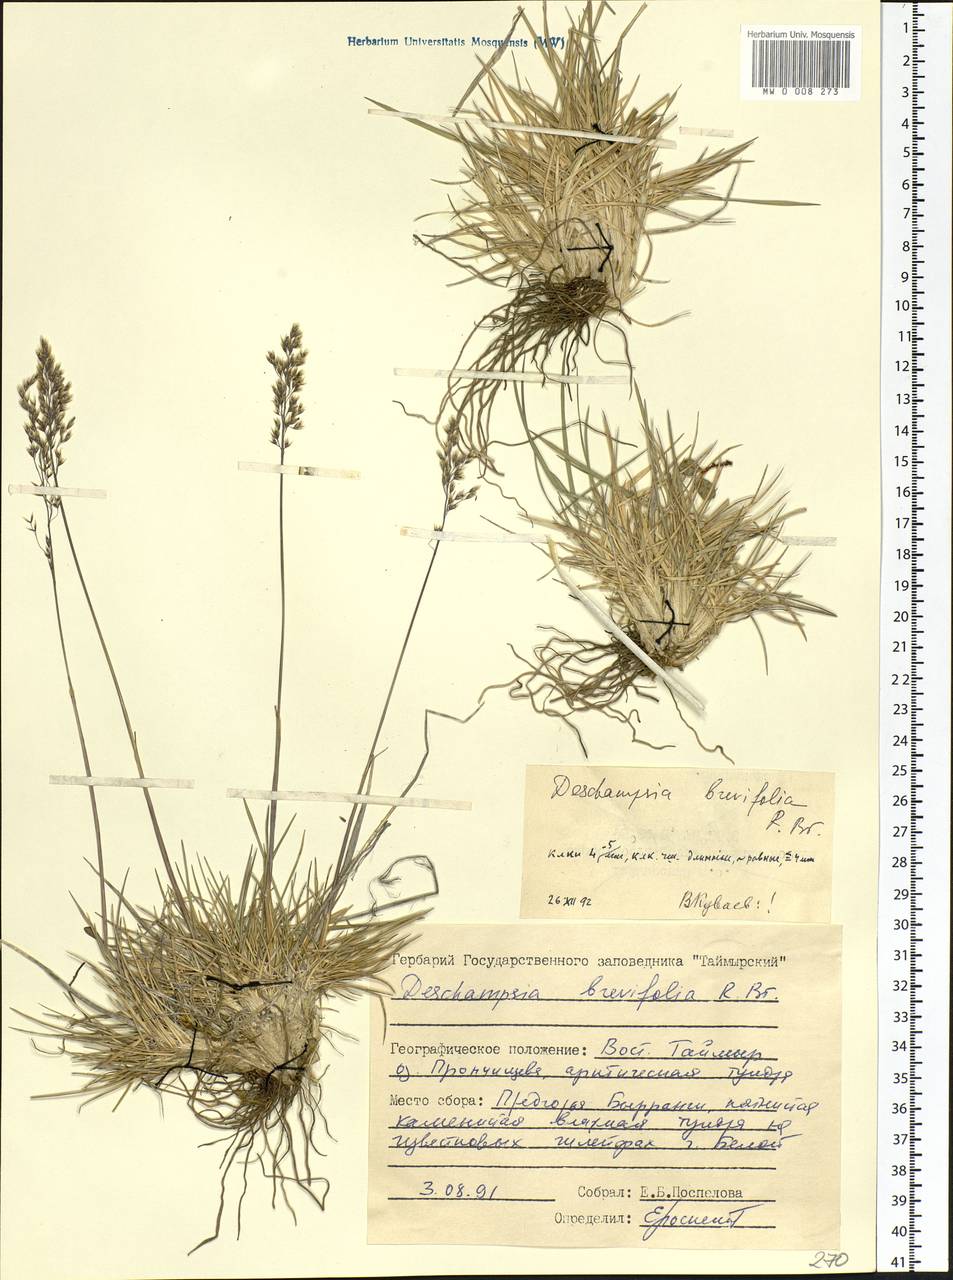 Deschampsia cespitosa subsp. septentrionalis Chiapella, Сибирь, Центральная Сибирь (S3) (Россия)